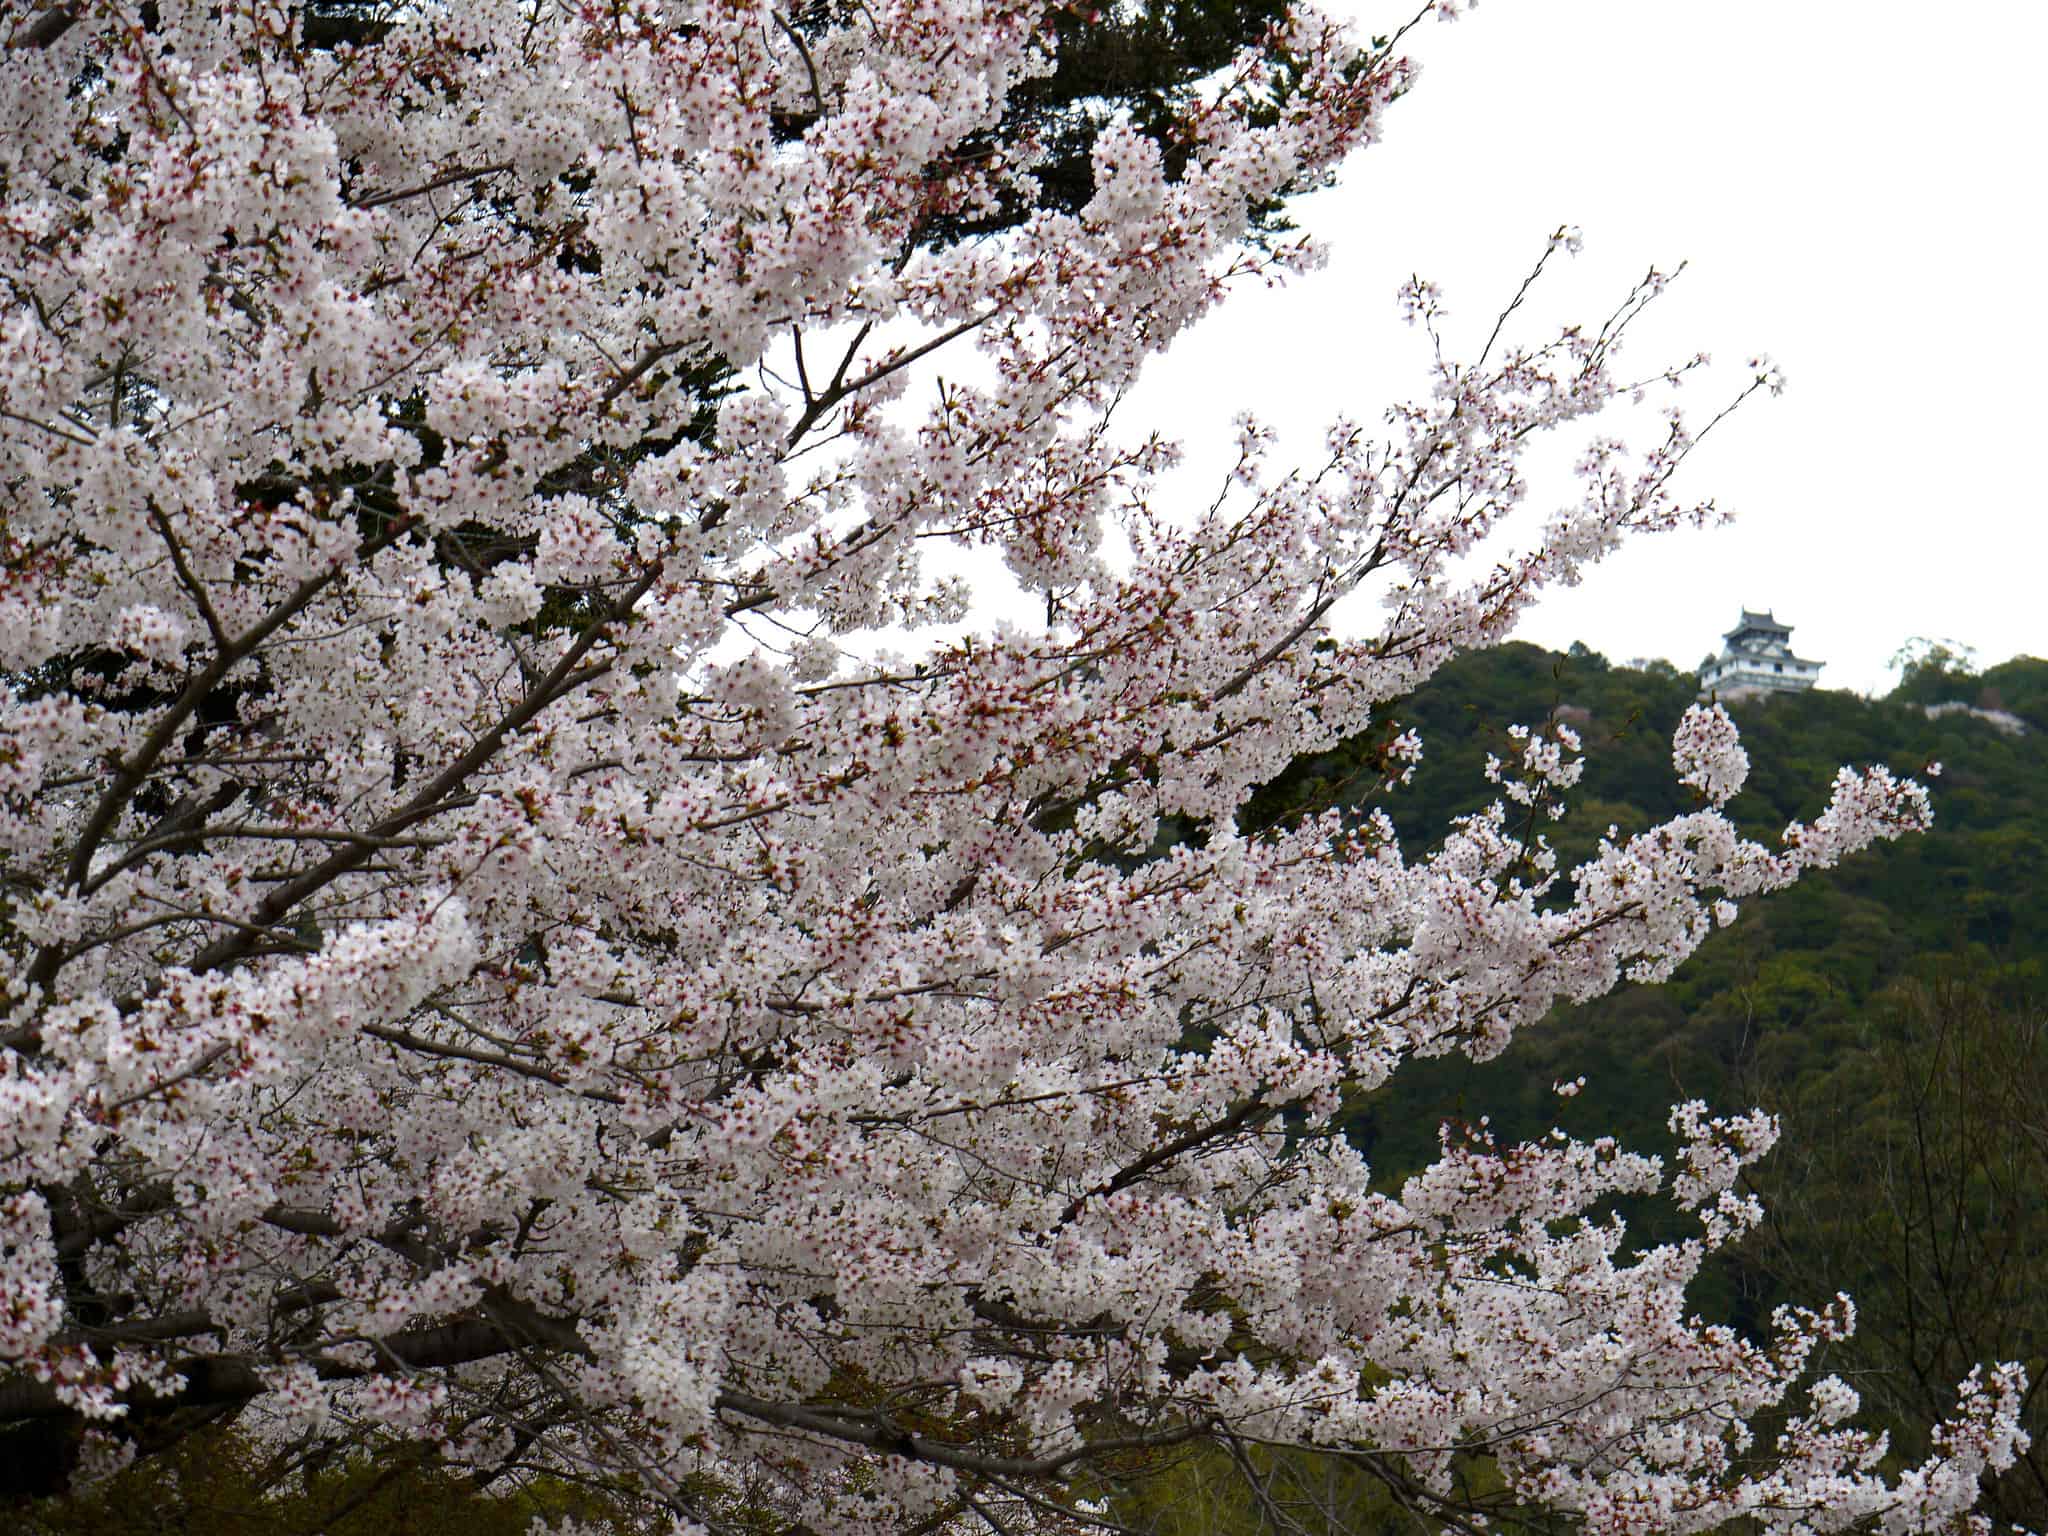 Sakura on a rainy day at Kintai Bridge